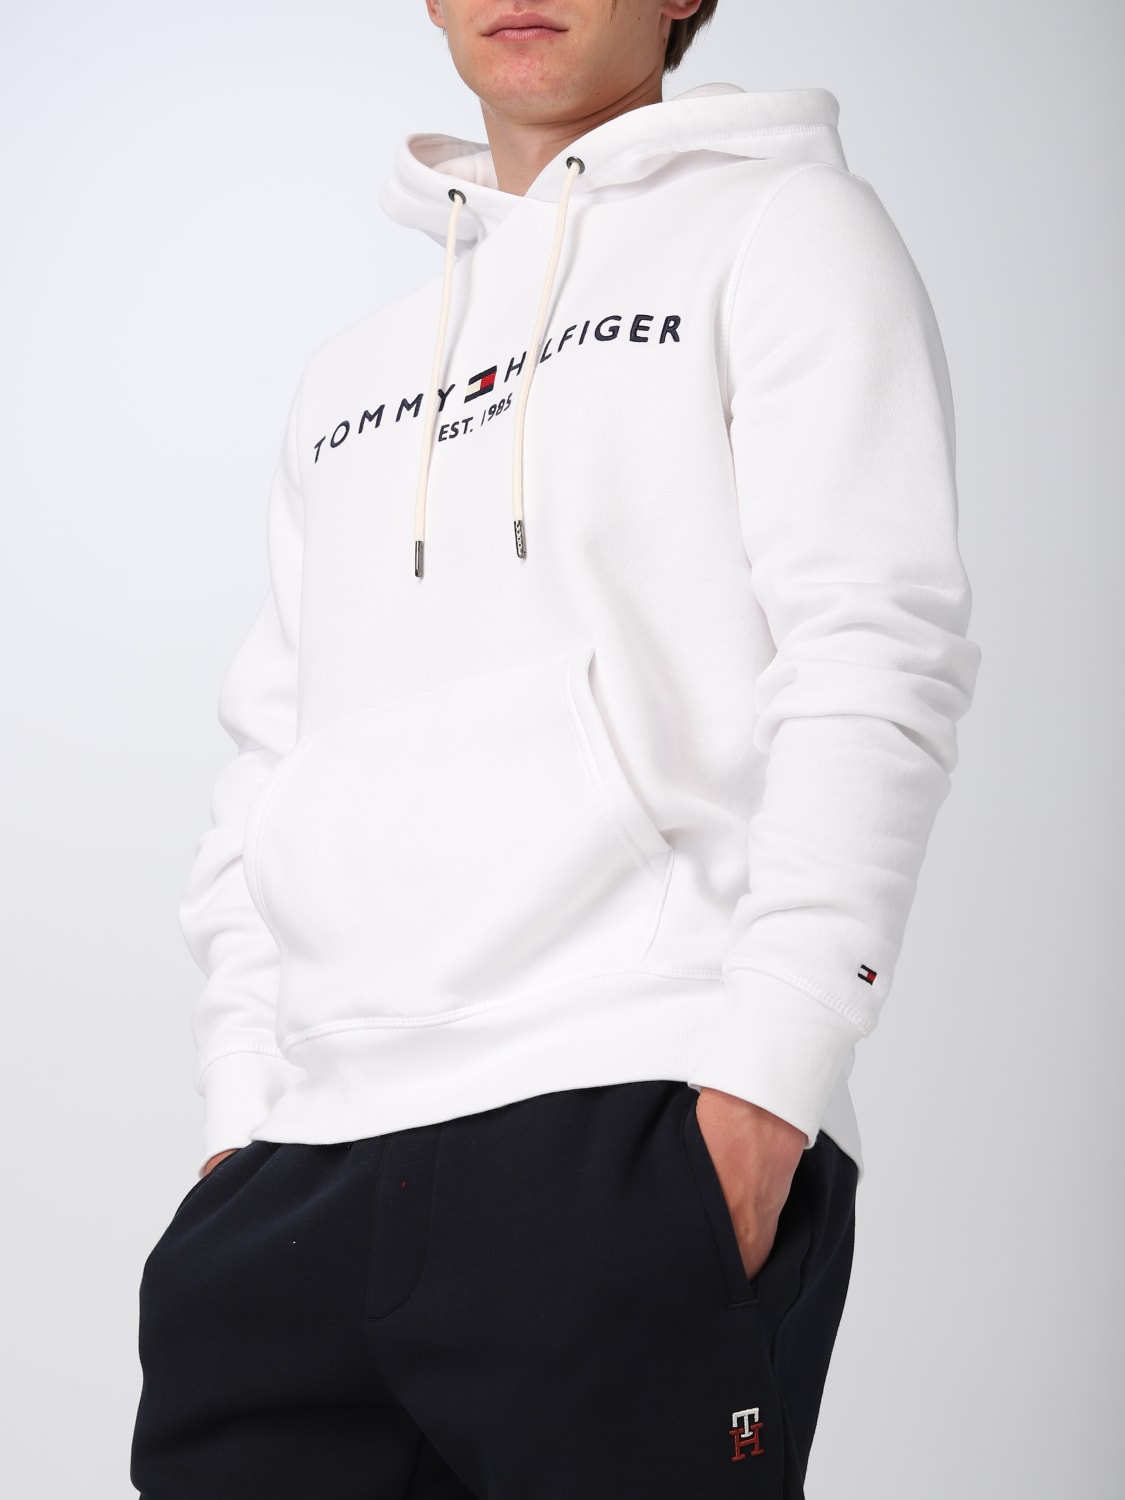 TOMMY HILFIGER: - in White sweatshirt online | Hilfiger MW0MW11599 sweatshirt cotton blend at Tommy